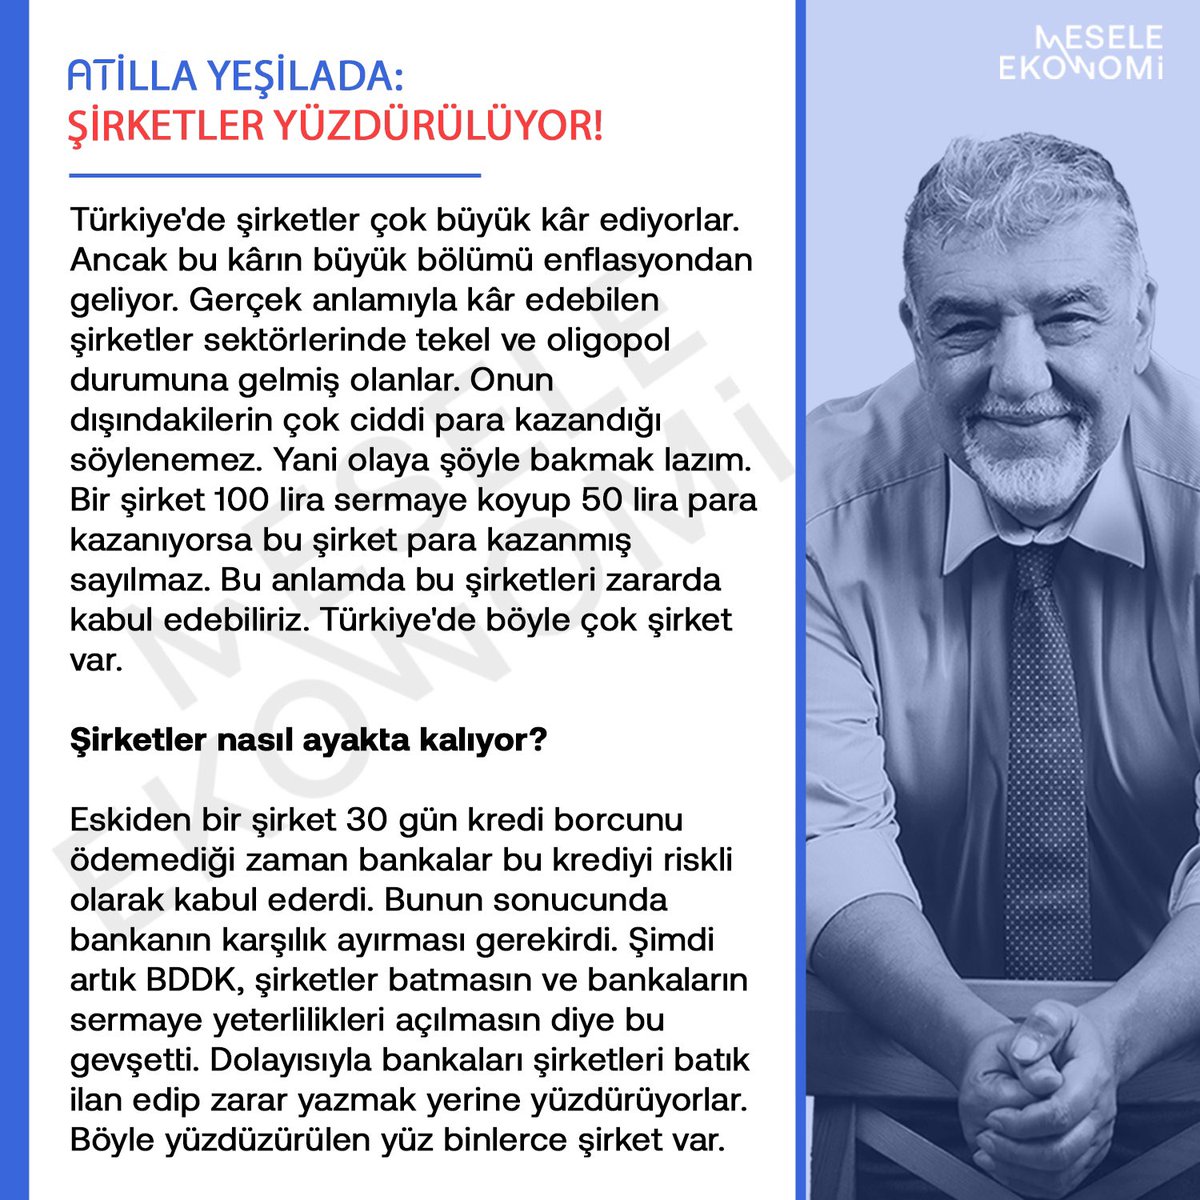 Şirketler nasıl ayakta kalıyor? @AtillaYesilada1 yanıtladı.👇 Türkiye'de şirketler çok büyük kâr ediyorlar. Ancak bu kârın büyük bölümü enflasyondan geliyor. Gerçek anlamıyla kâr edebilen şirketler sektörlerinde tekel ve oligopol durumuna gelmiş olanlar. Onun dışındakilerin…